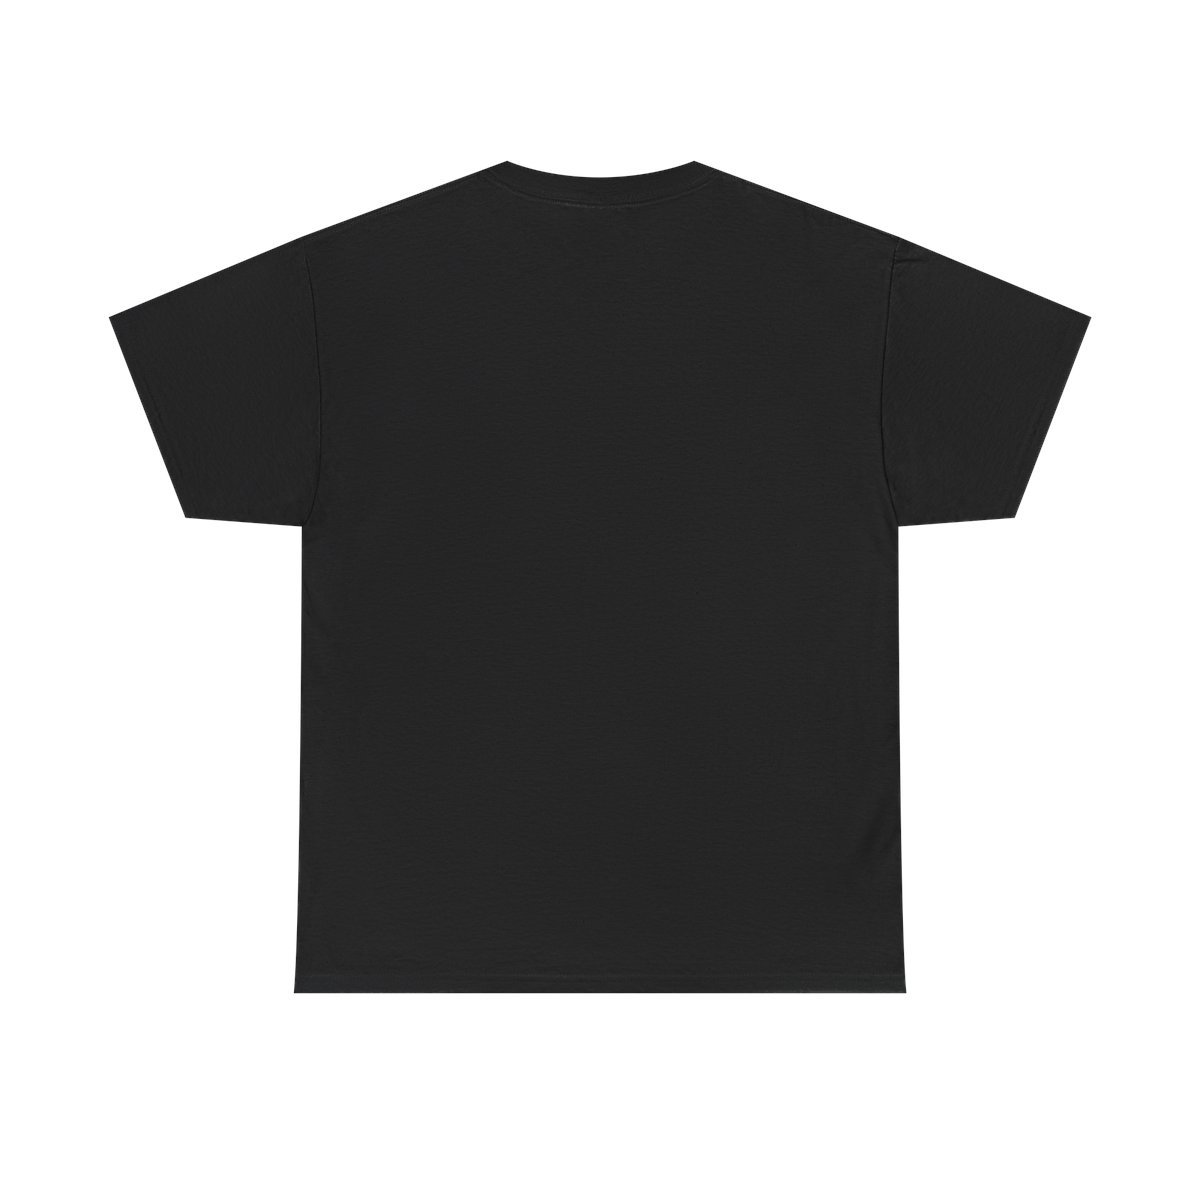 Deuteronomium – War Short Sleeve T-Shirt